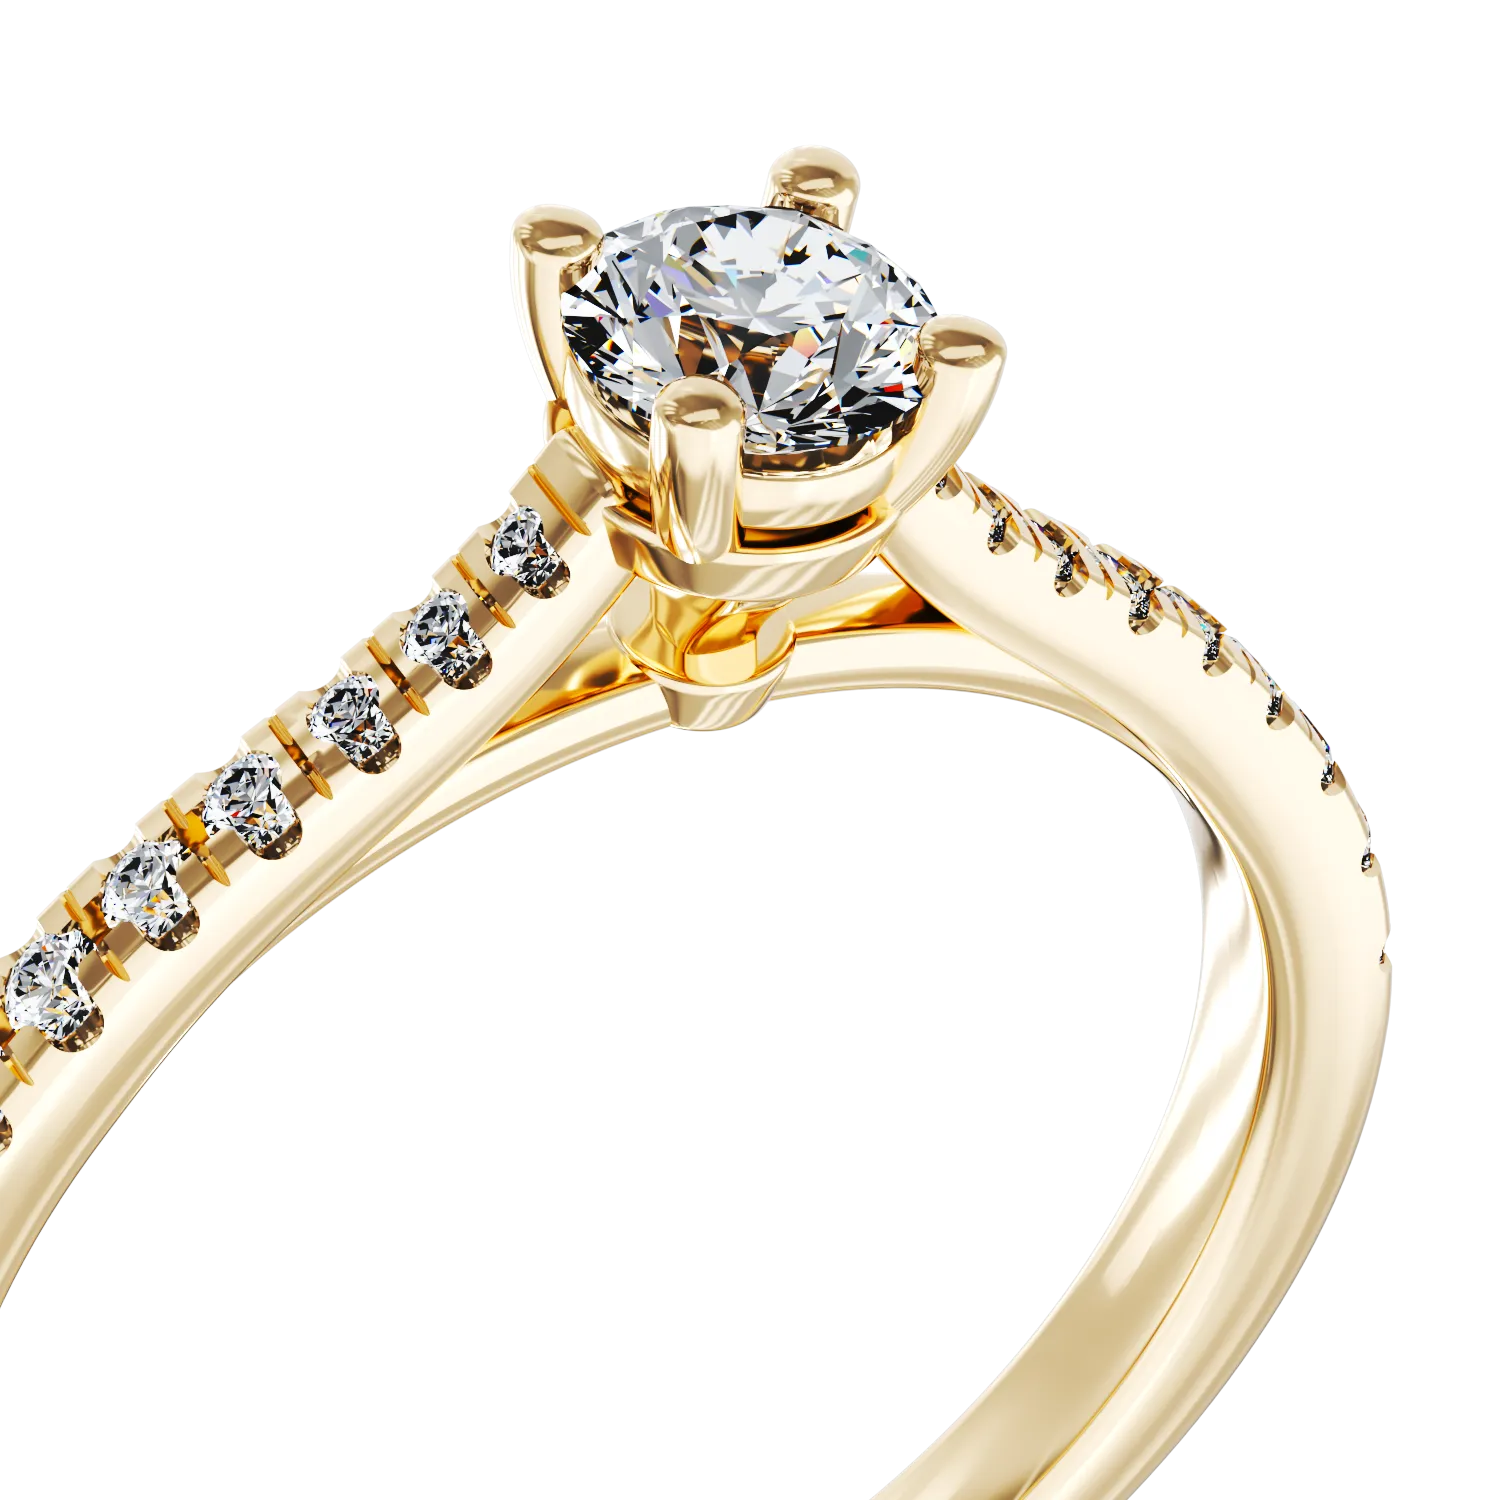 Eljegyzési gyűrű 18K-os sárga aranyból 0,24ct gyémánttal és 0,18ct gyémántokkal. Gramm: 2,44